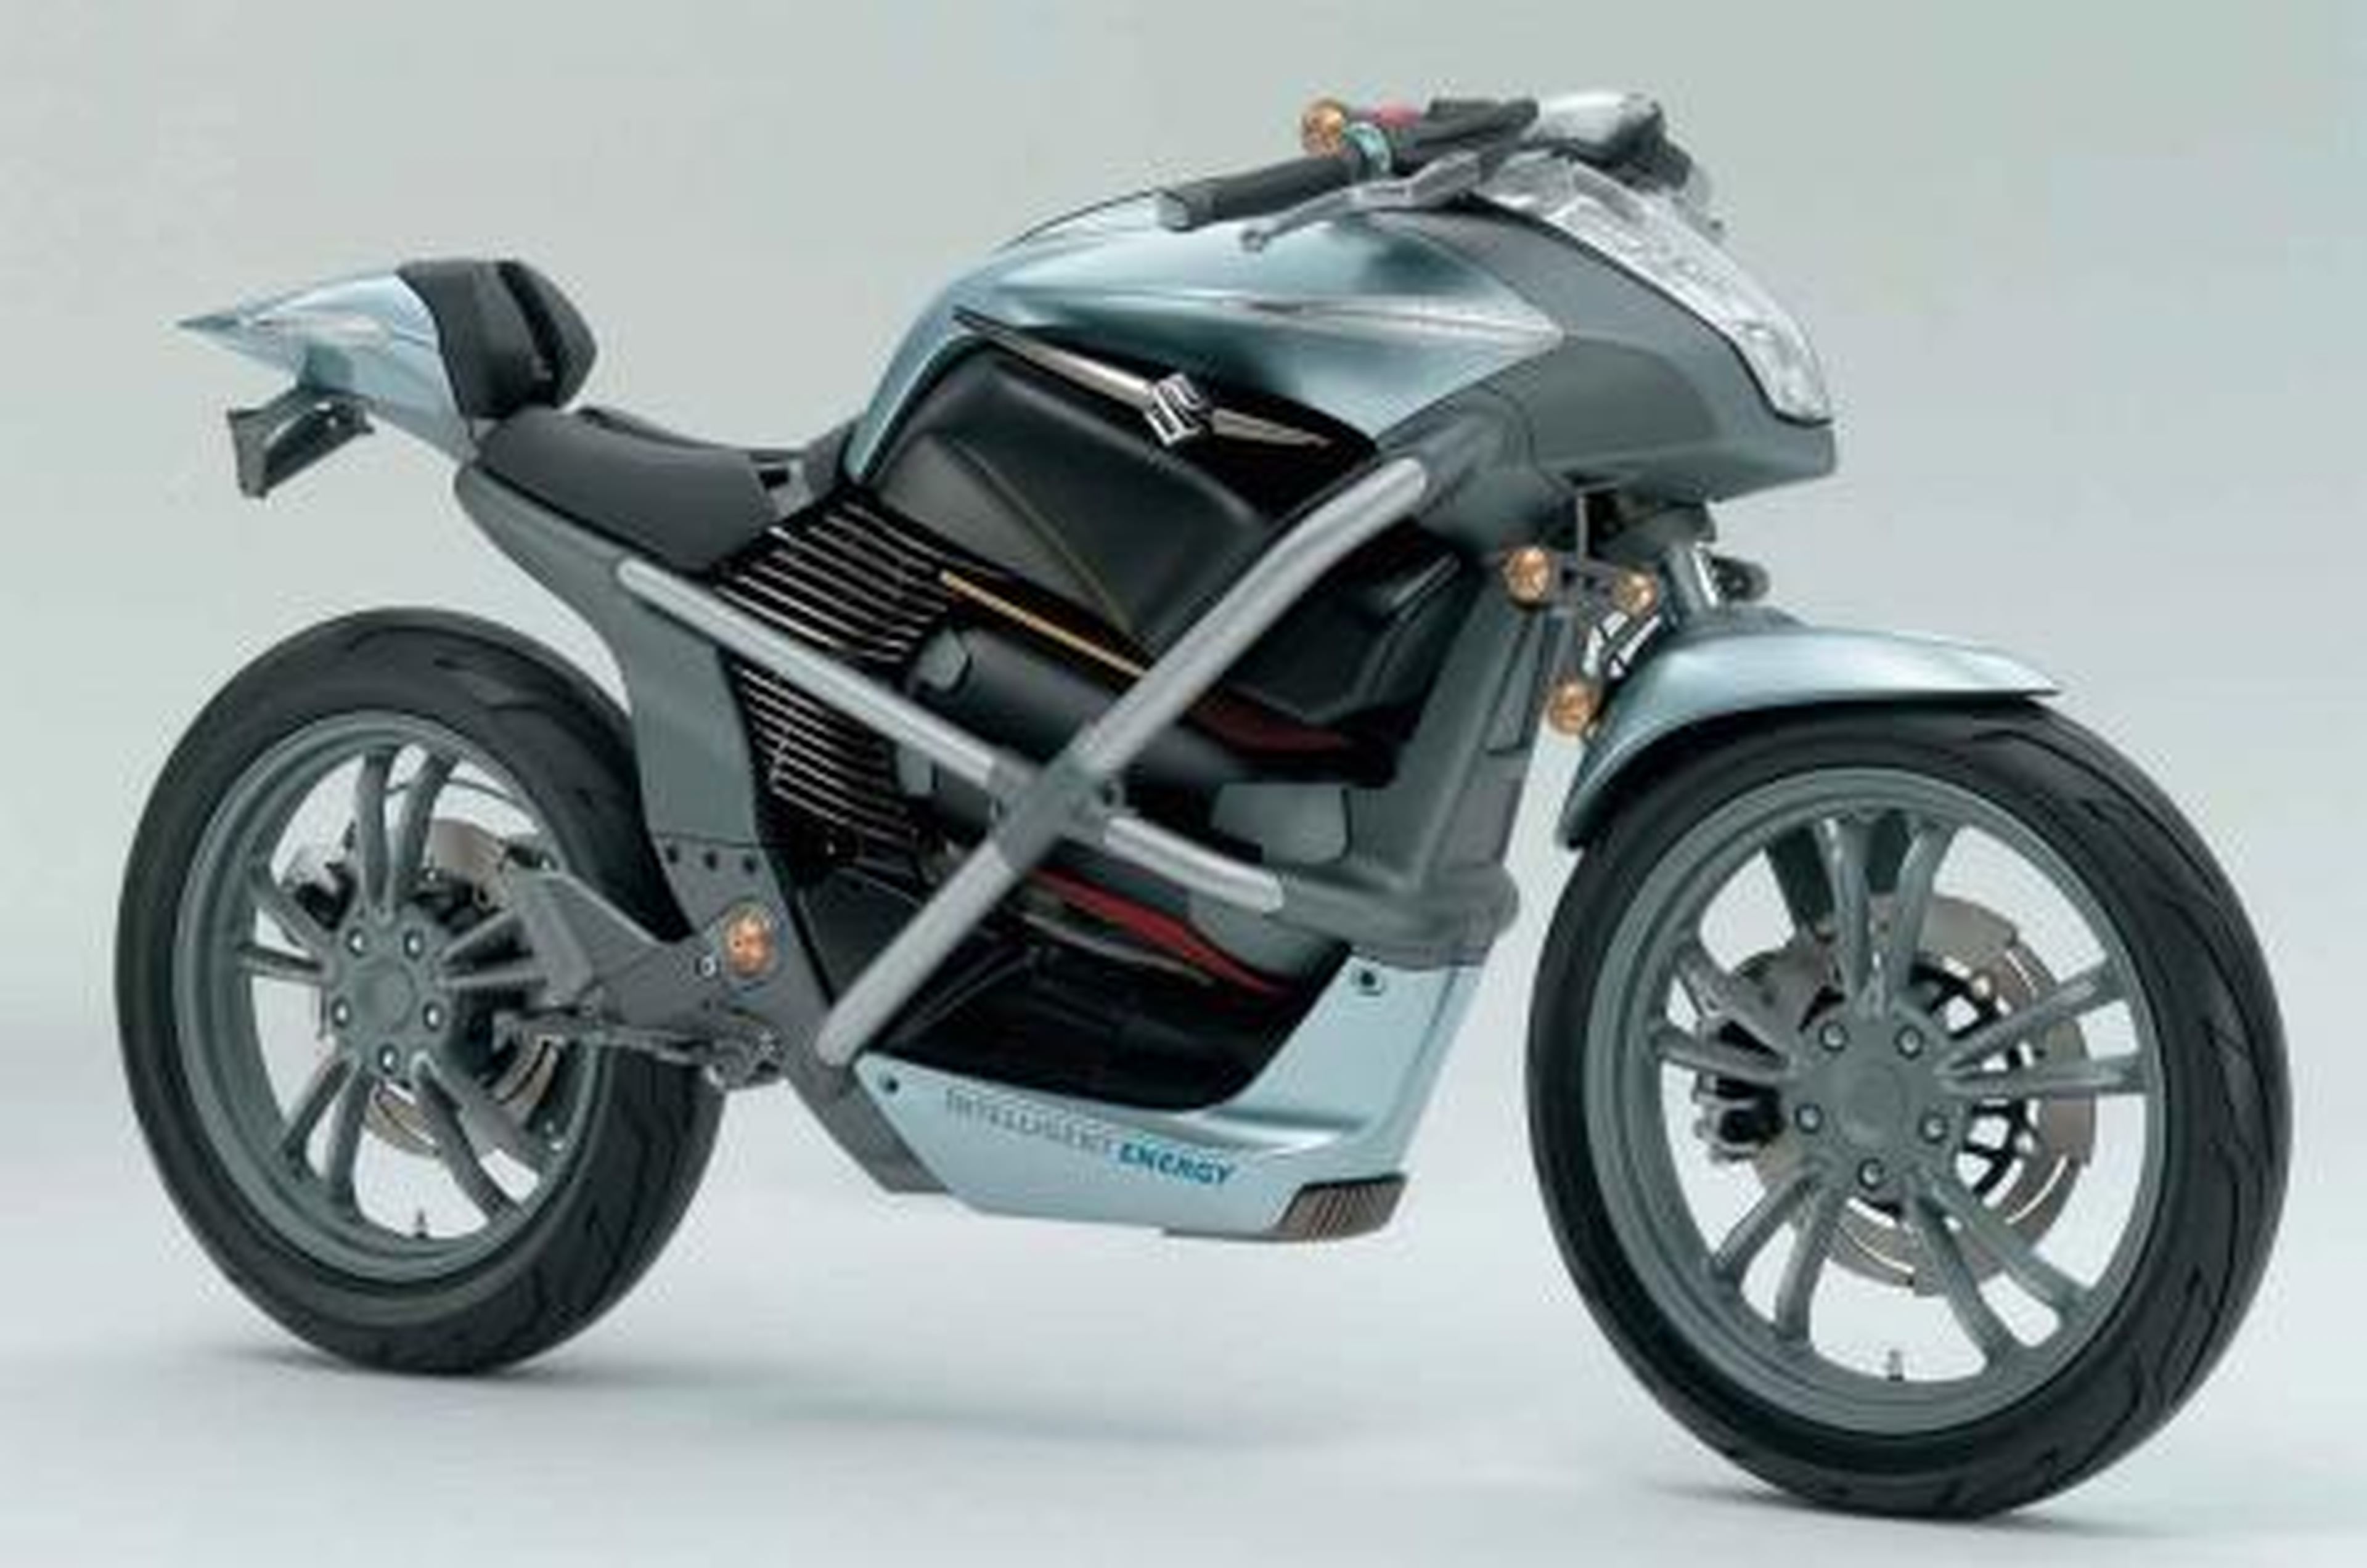 Suzuki planea fabricar su primera moto de hidrógeno